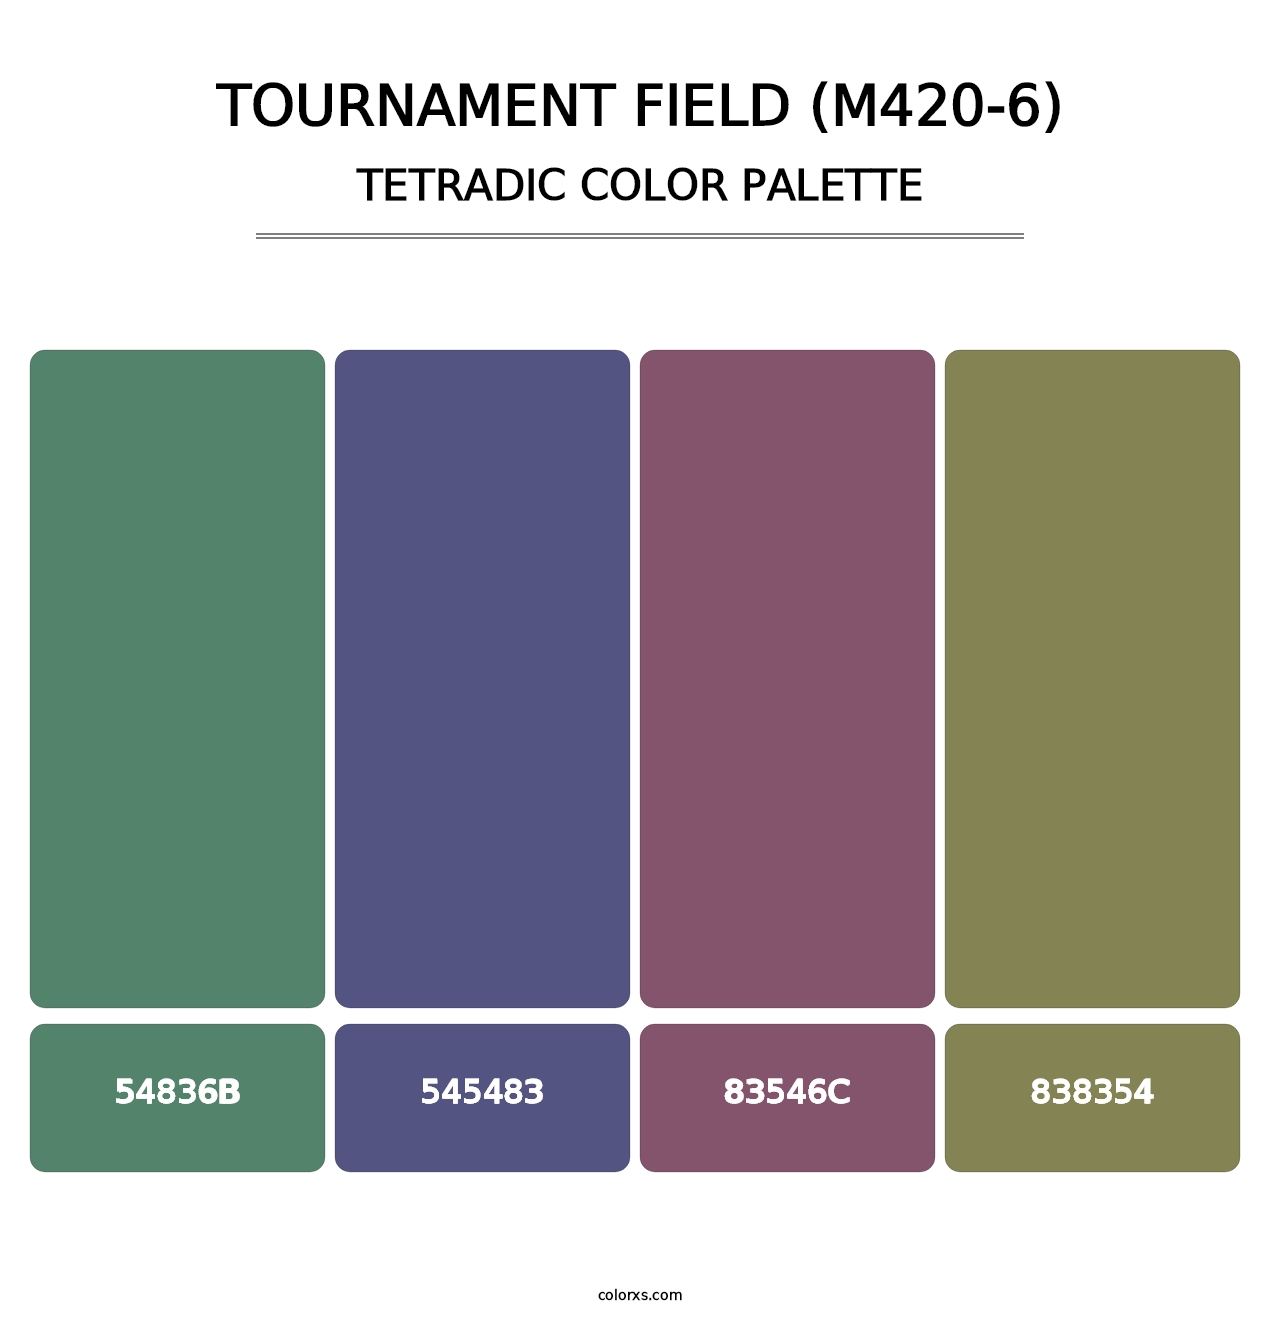 Tournament Field (M420-6) - Tetradic Color Palette